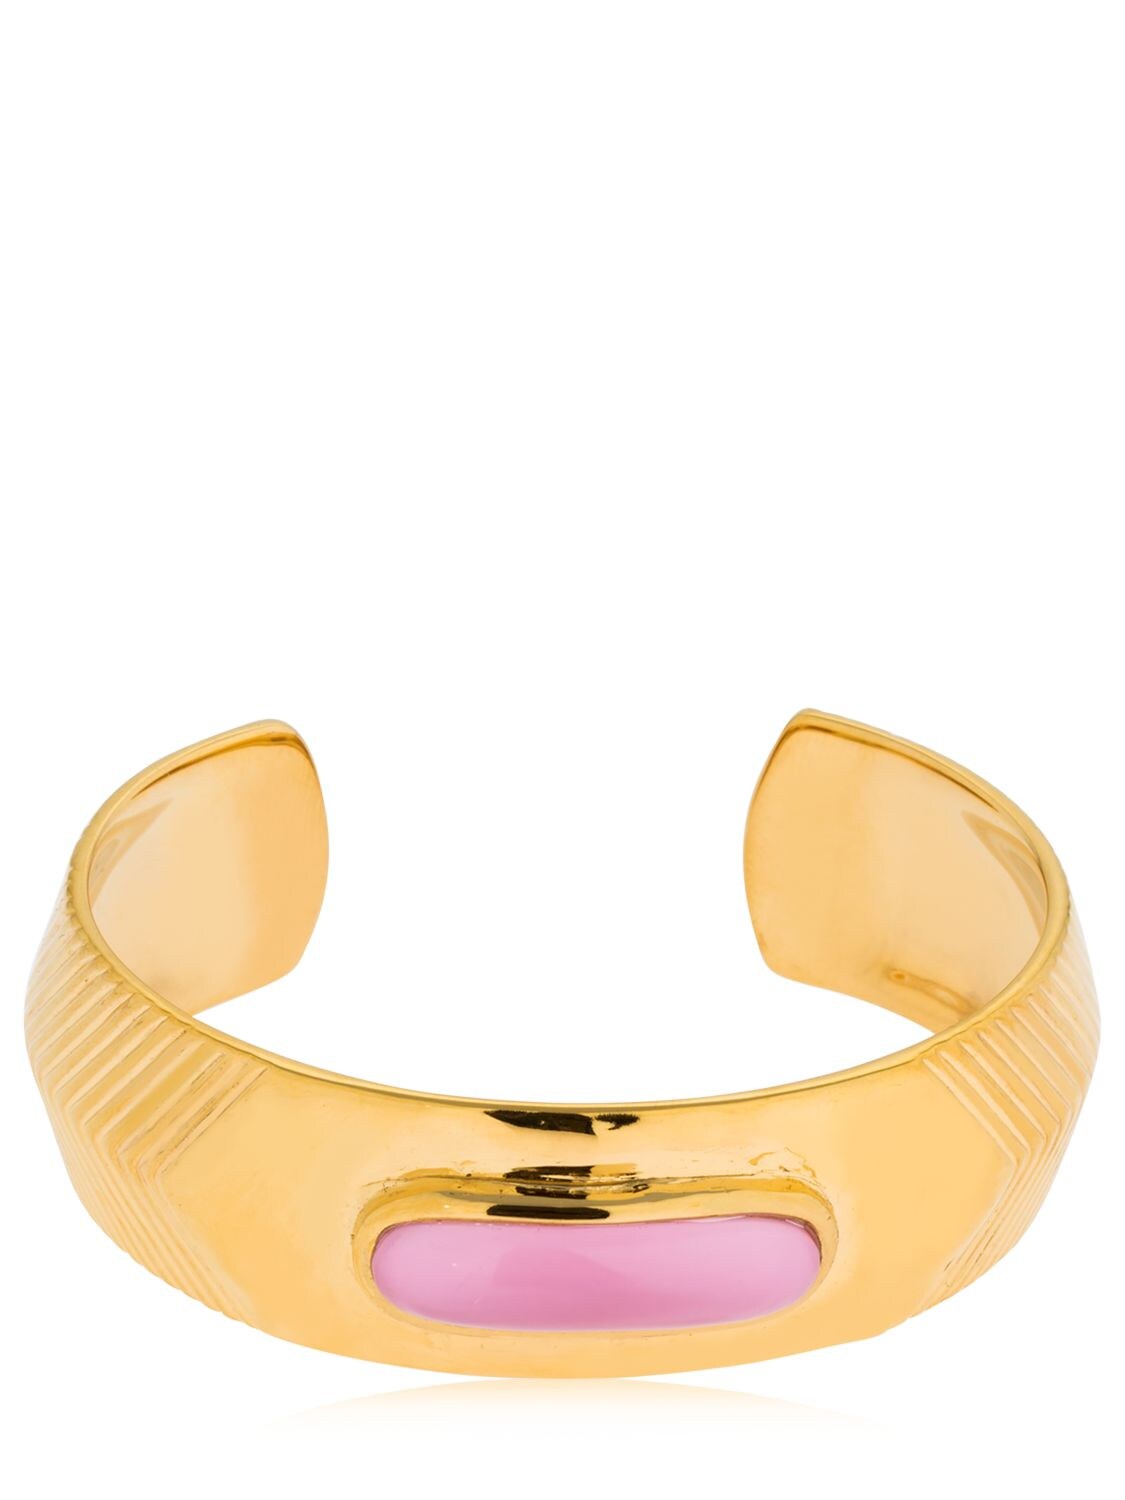 Aurelie Bidermann Peggy Bracelet In Gold,pink